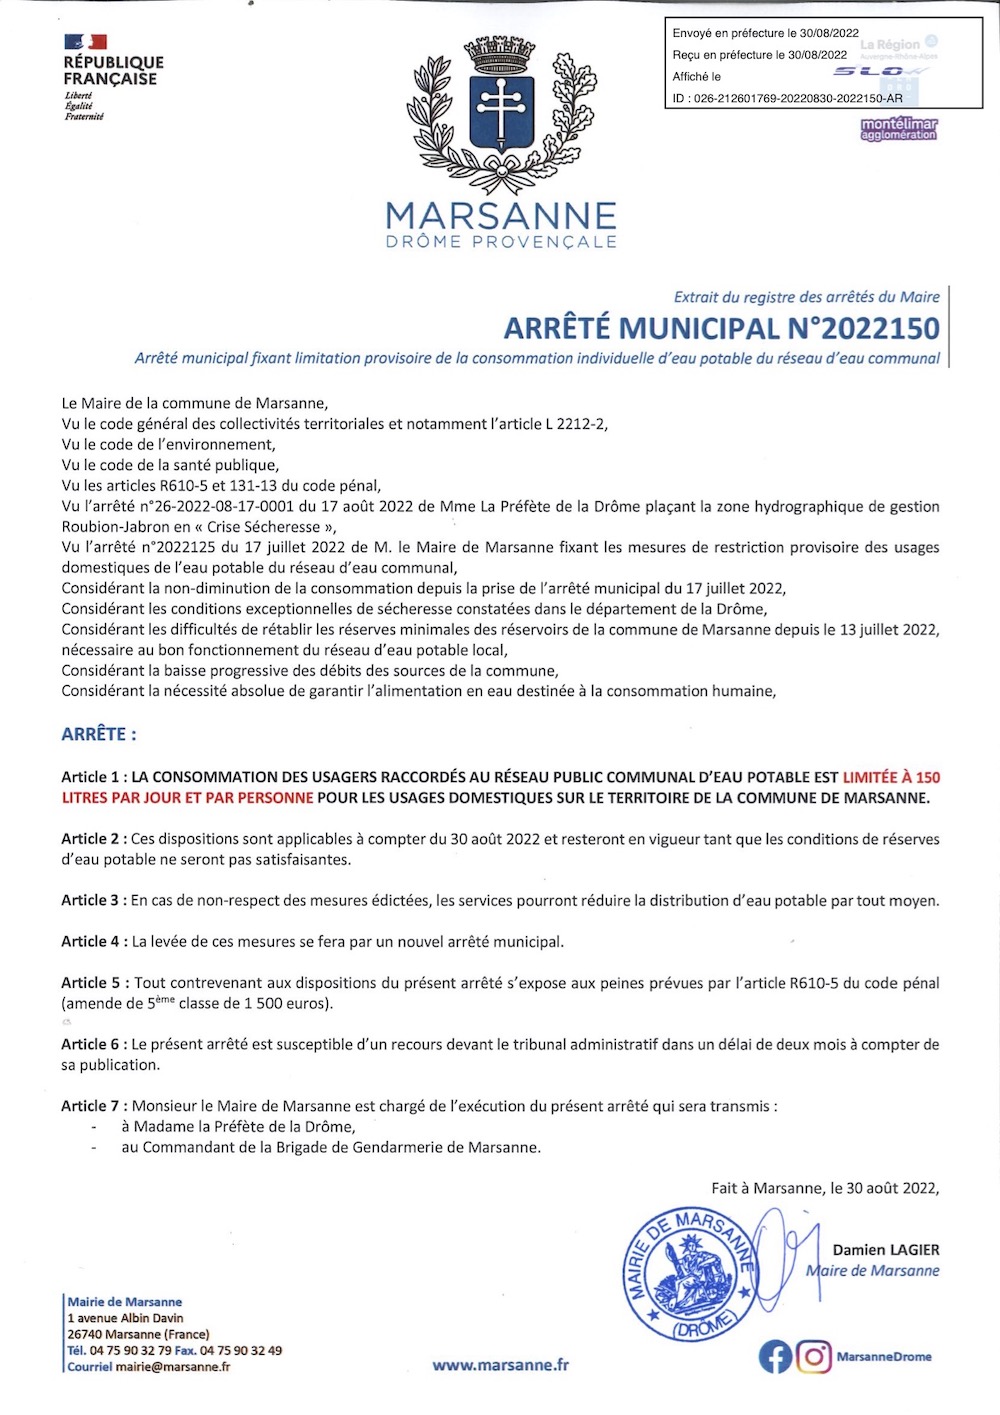 20220830 MARSANNE ARRETE RESTRICTION 150L EAU